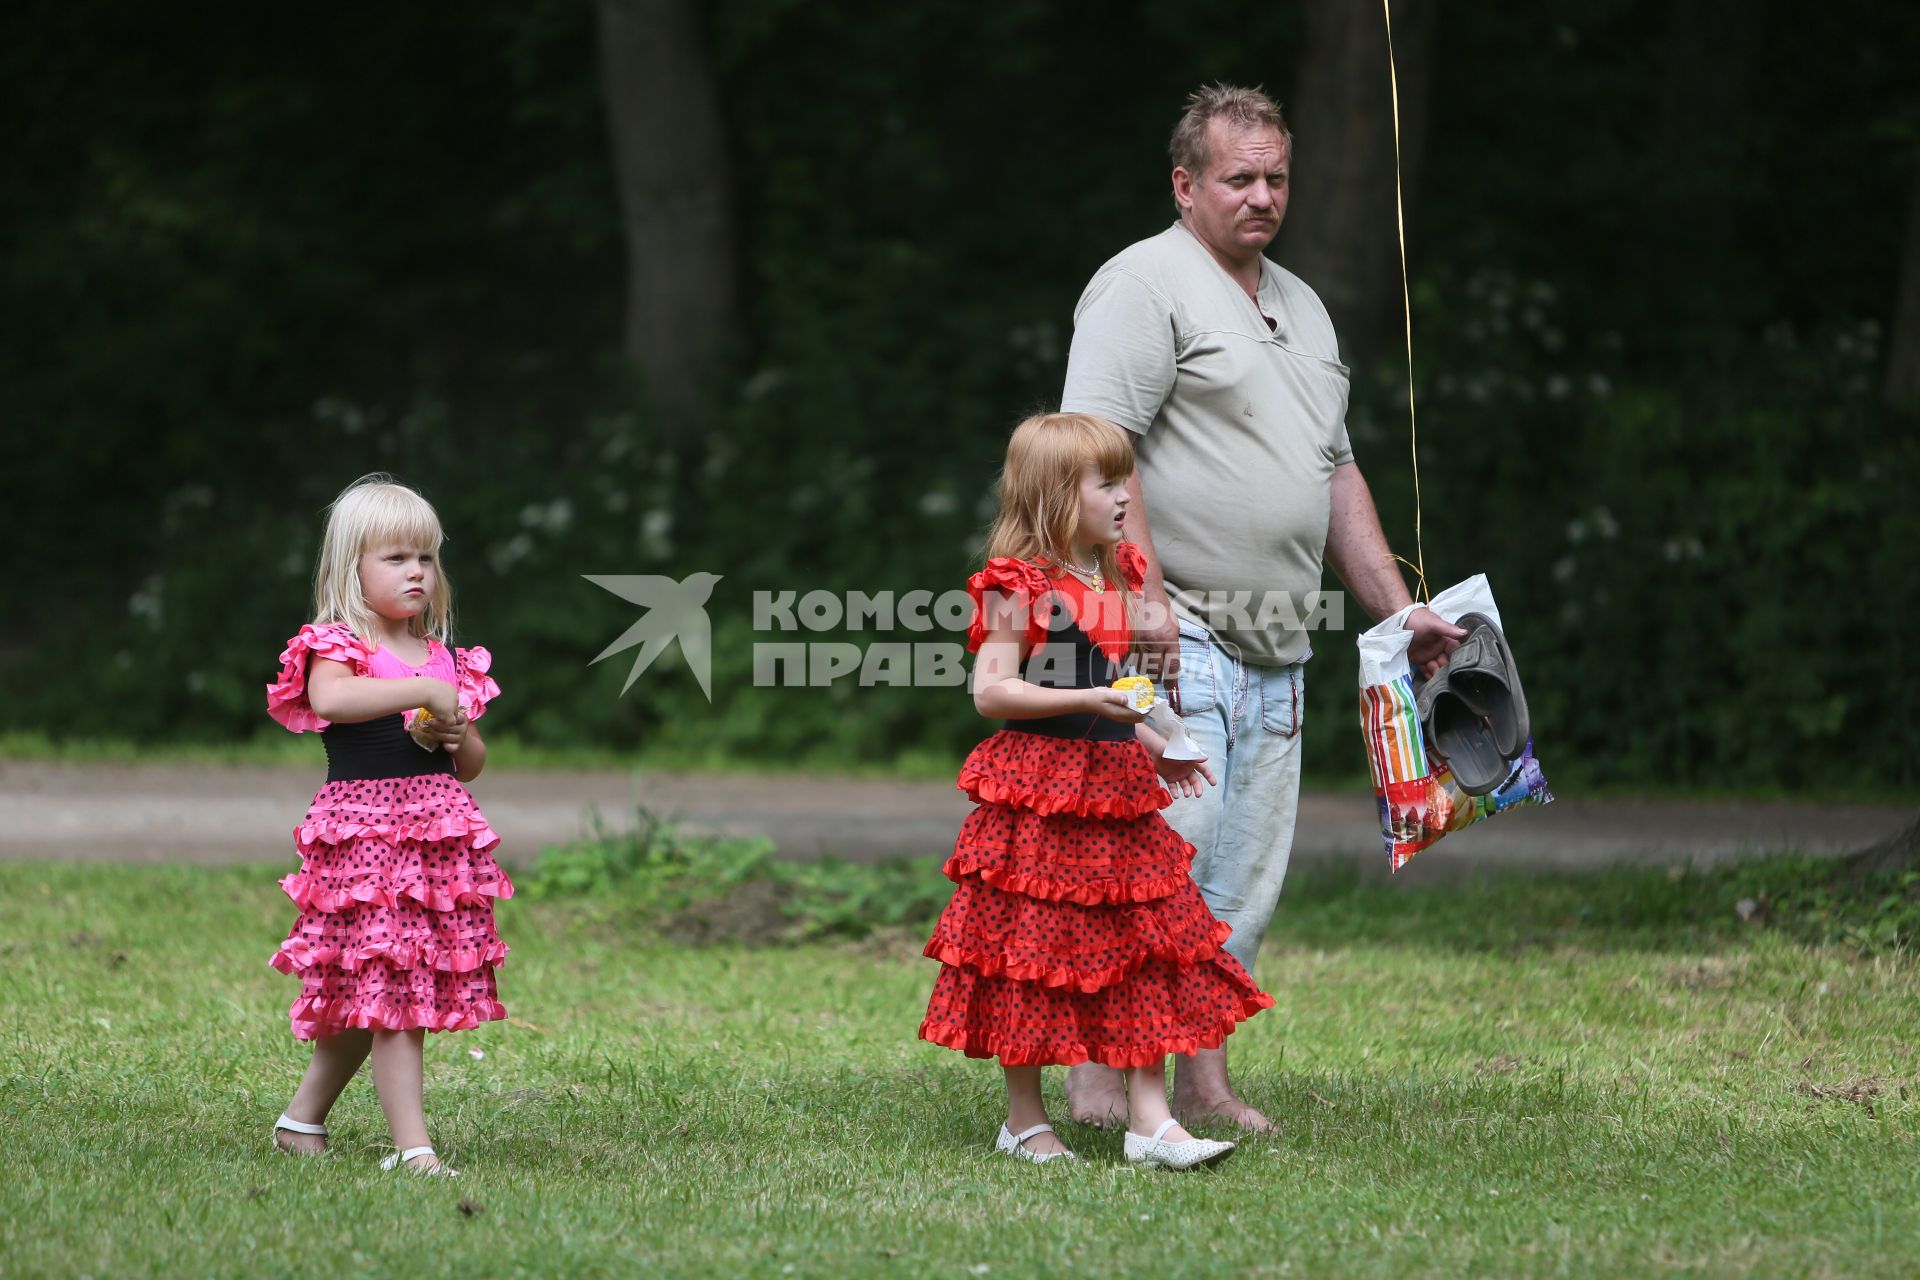 Санкт-Петербург. Мужчина  с детьми во время прогулки в парке.